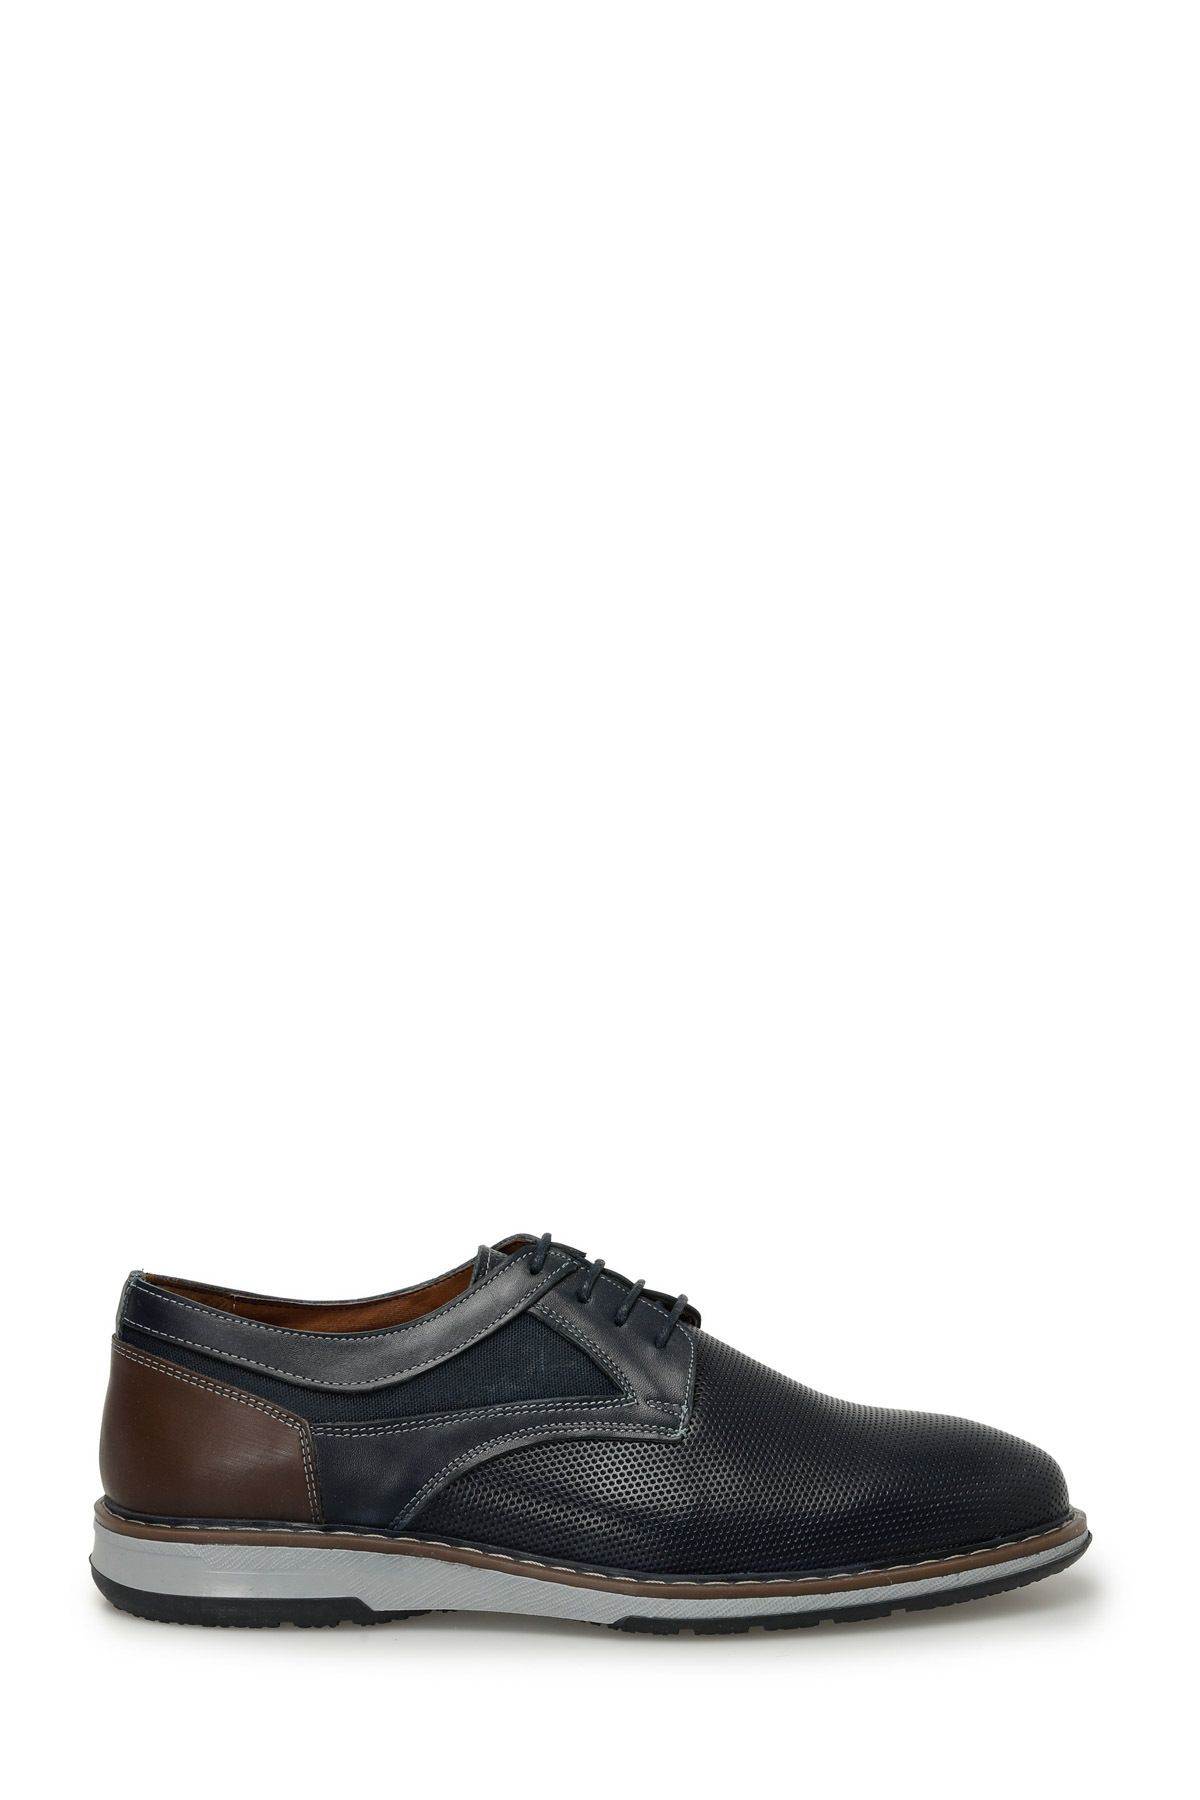 Garamond PENA 4FX Lacivert Erkek Klasik Ayakkabı